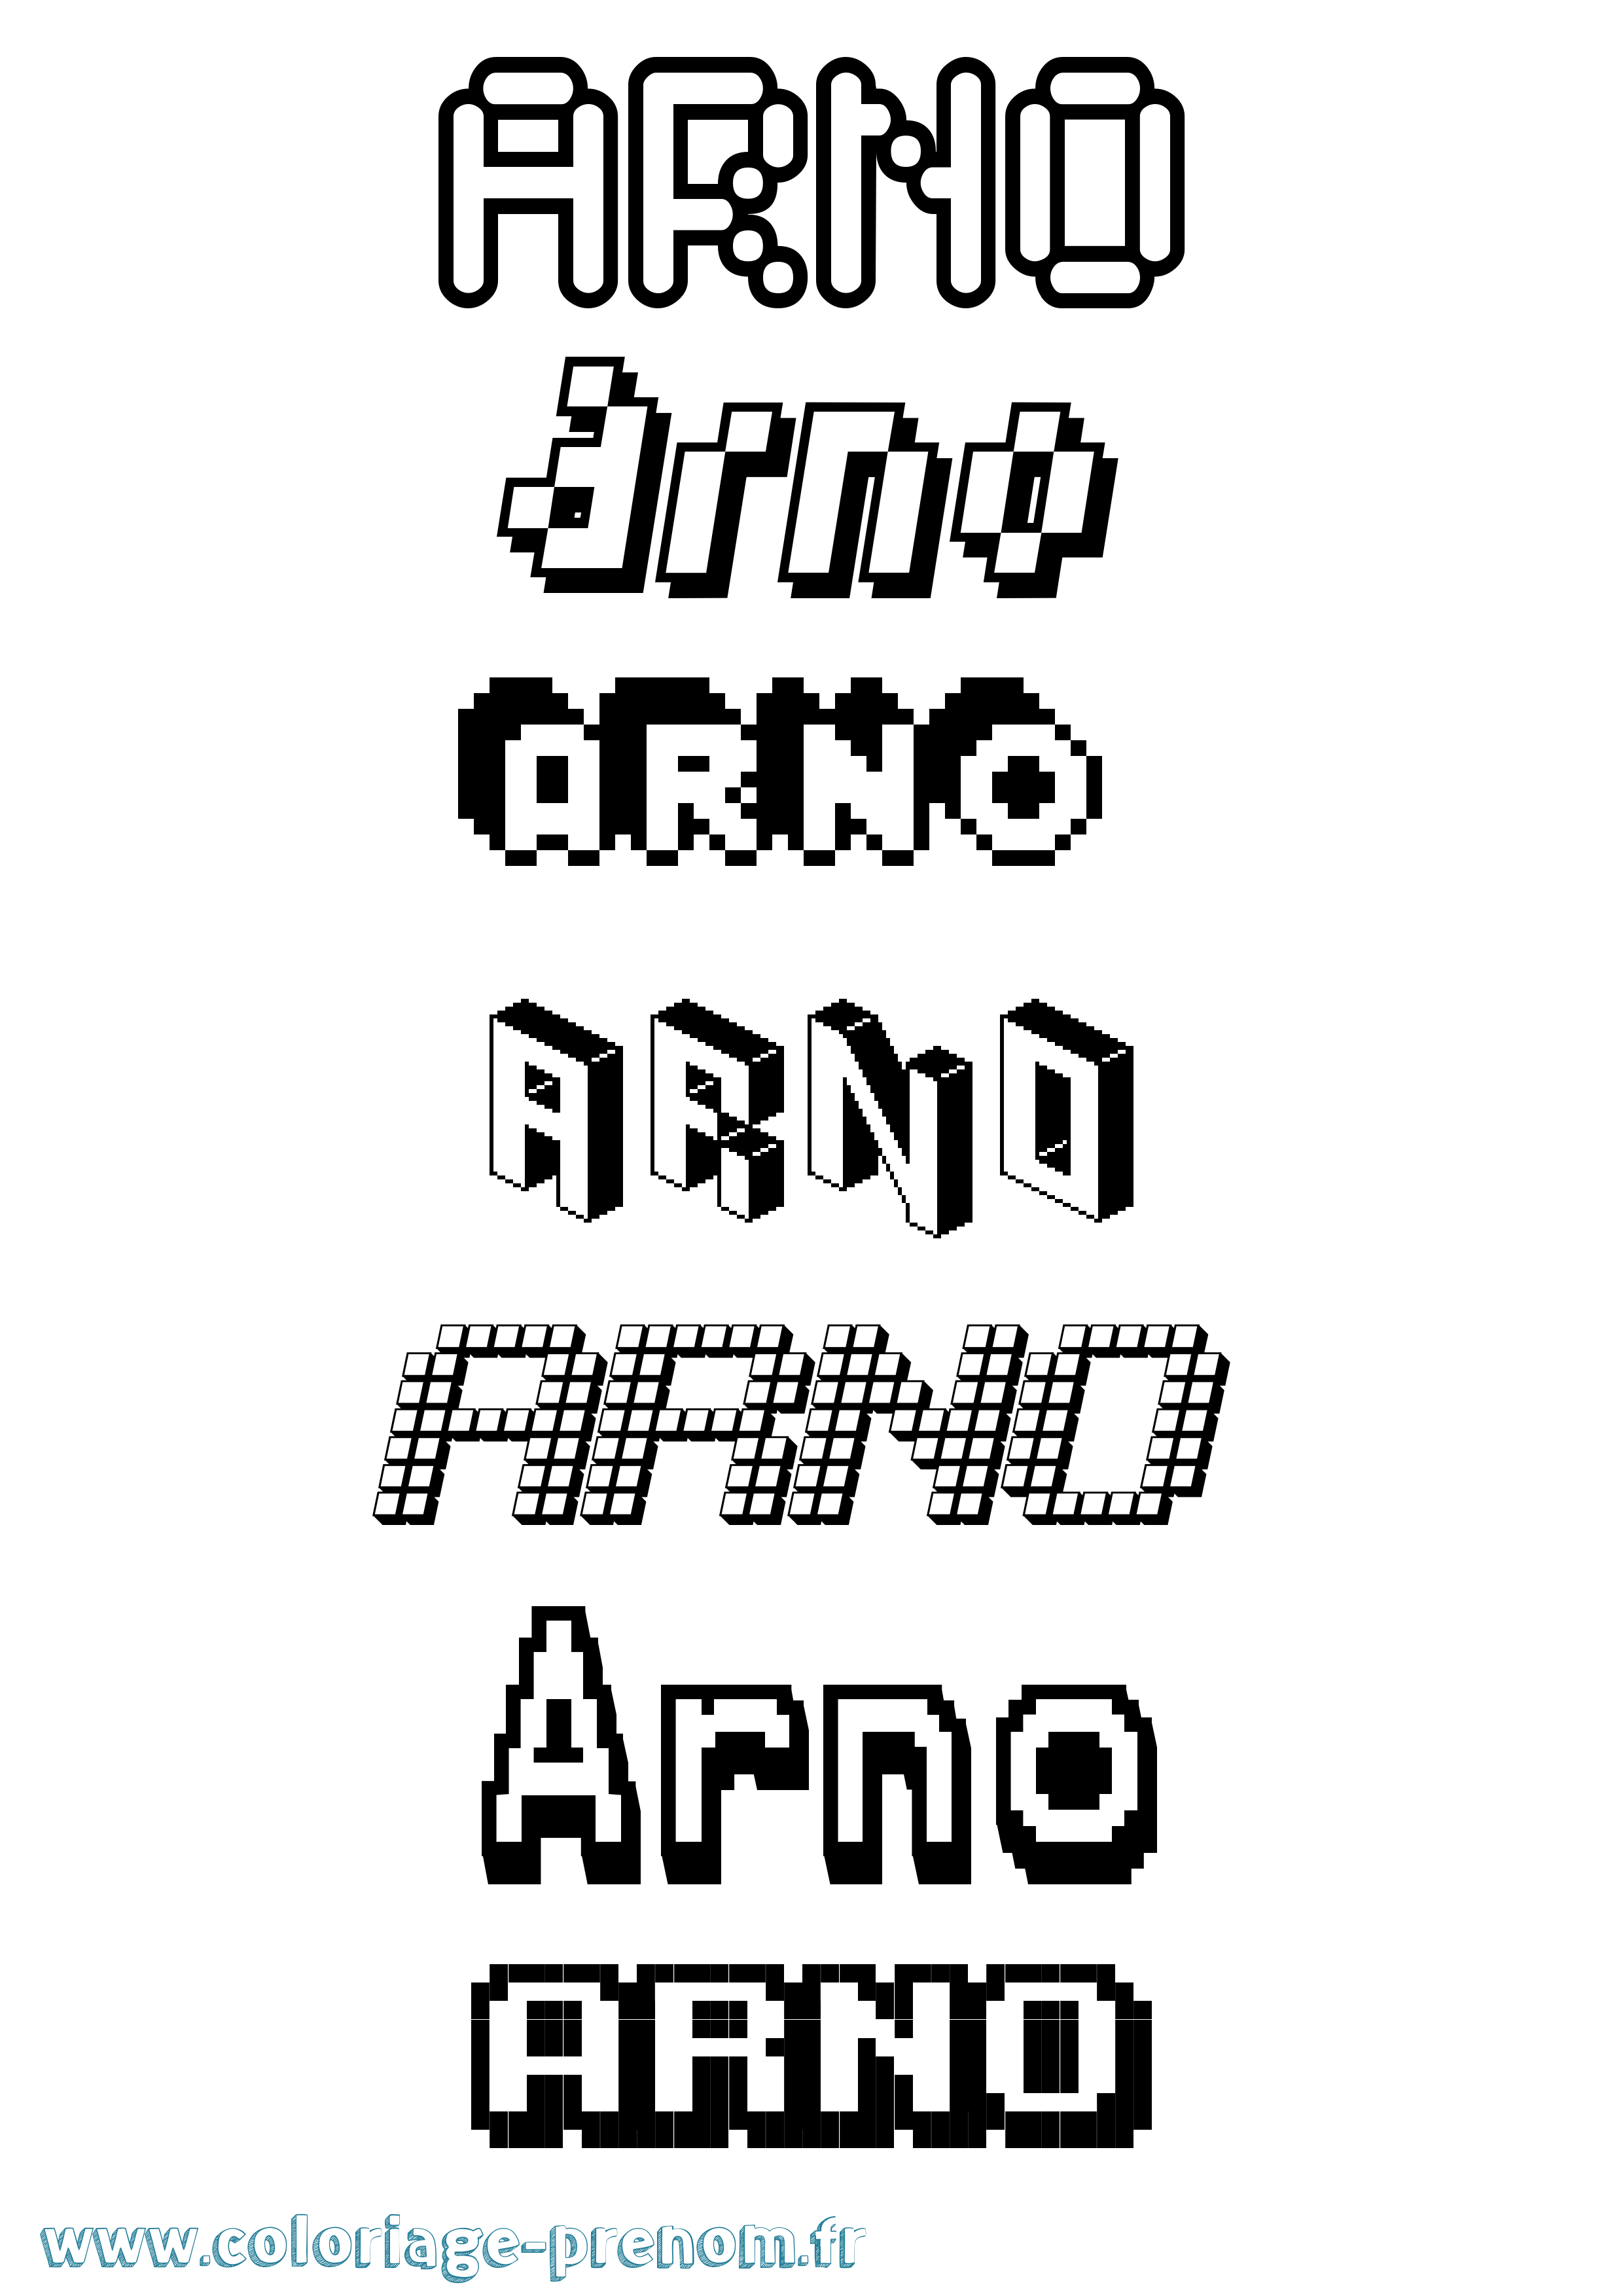 Coloriage prénom Arno Pixel